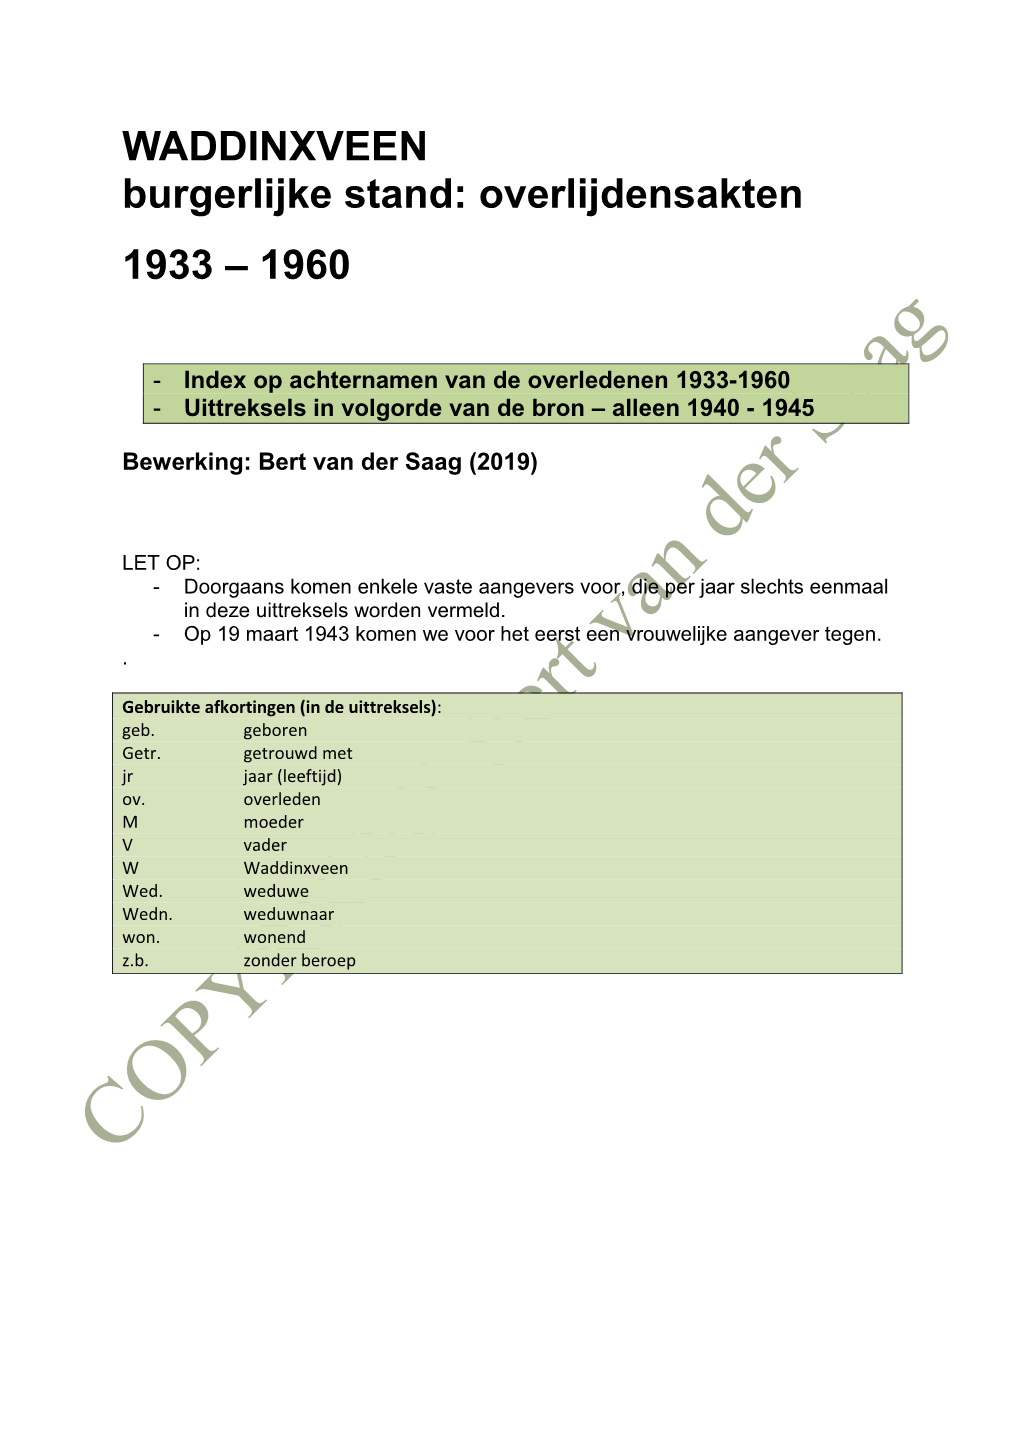 WADDINXVEEN Burgerlijke Stand: Overlijdensakten 1933 – 1960